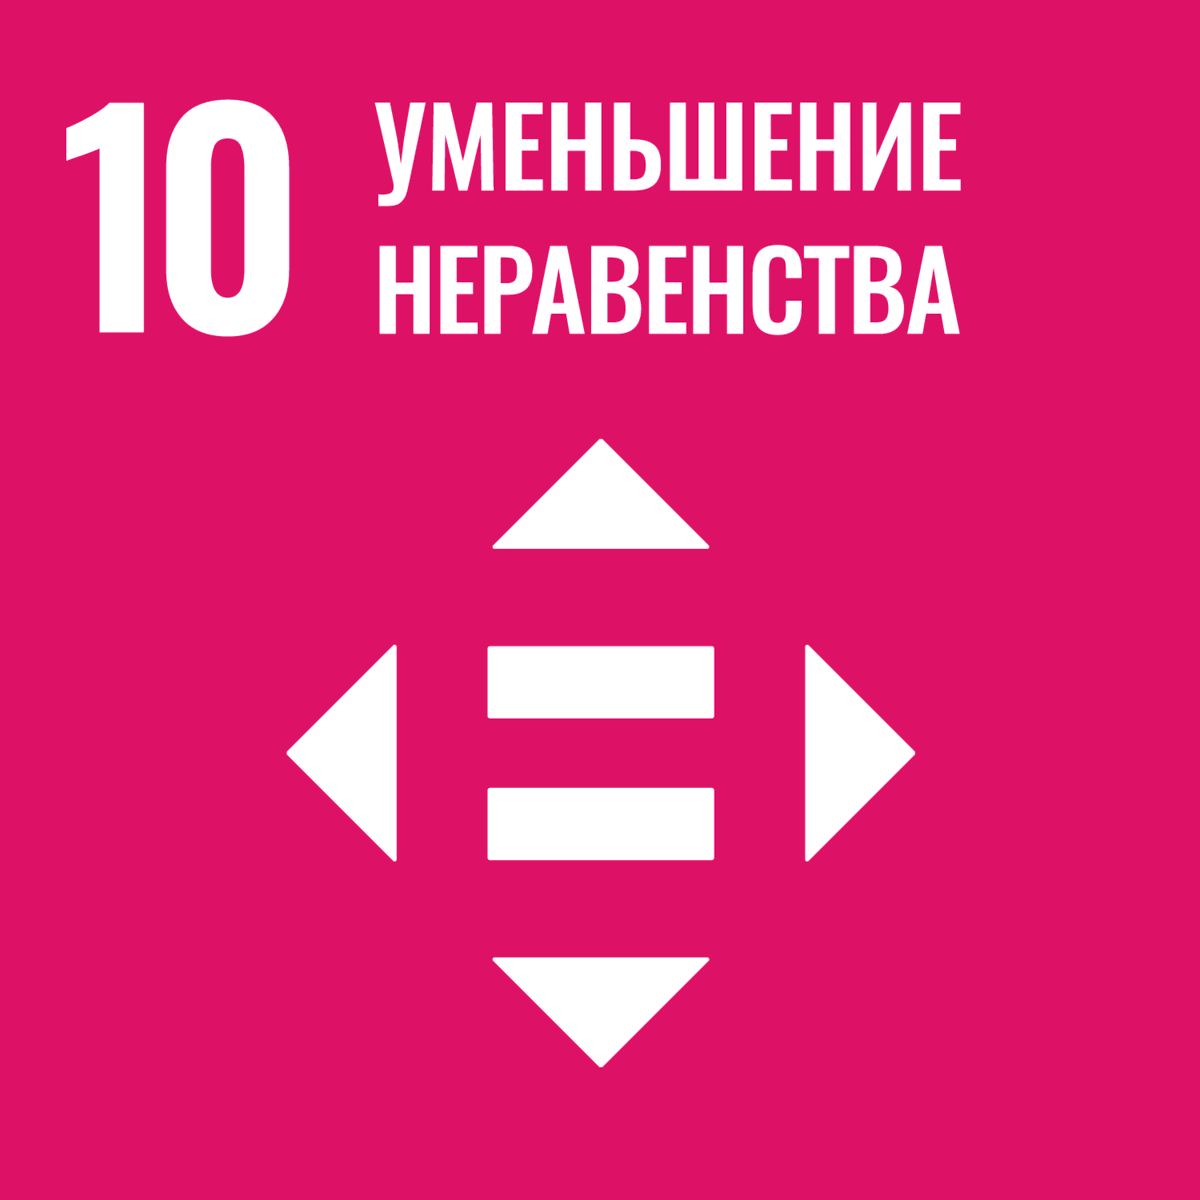 Мета сталого розвитку № 10: скорочення нерівності всередині країн та між ними — фото